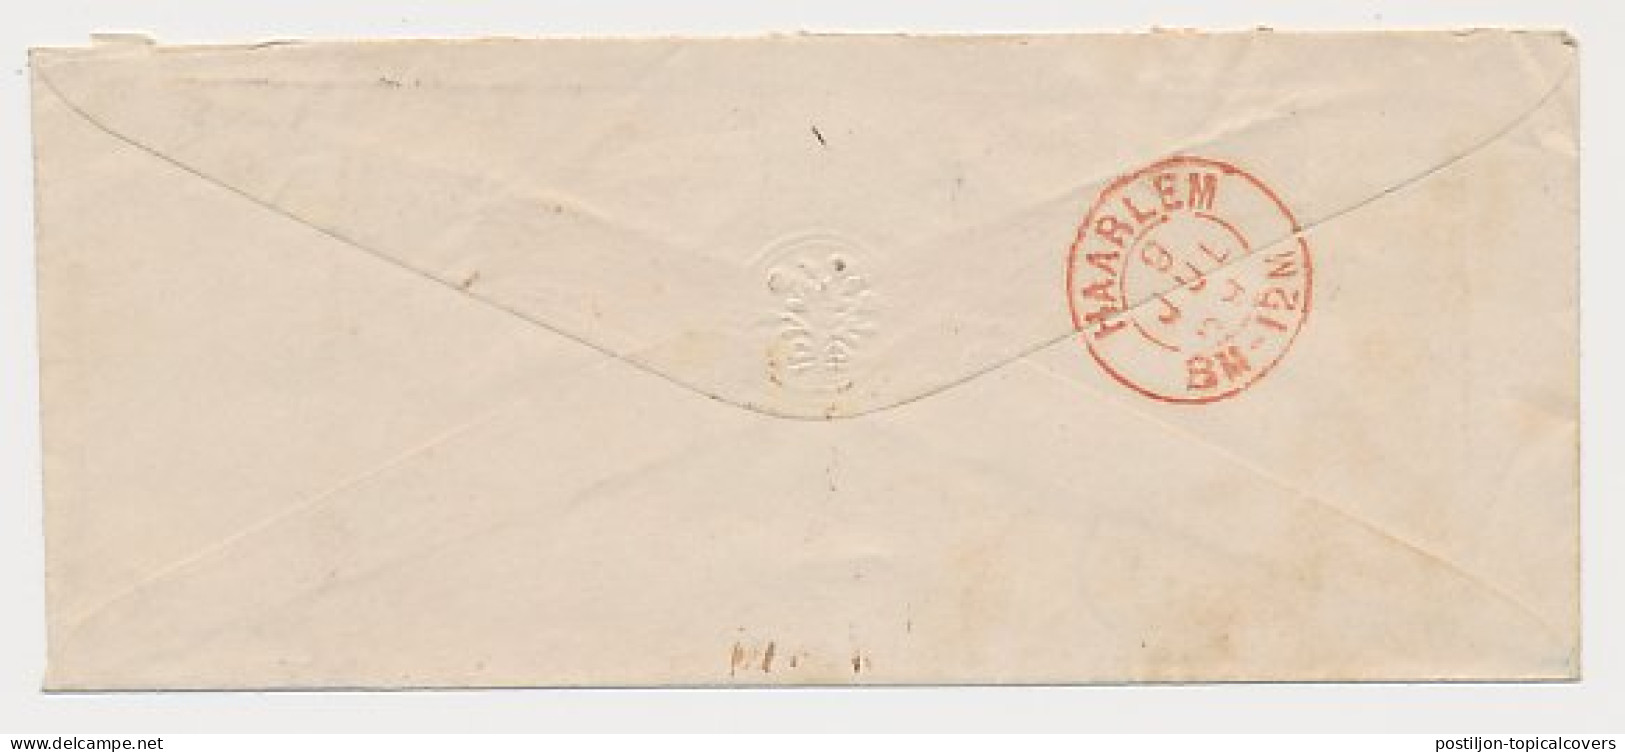 Hillegom - Leiden - Haarlem 1869 - Gebroken Ringstempel - Lettres & Documents